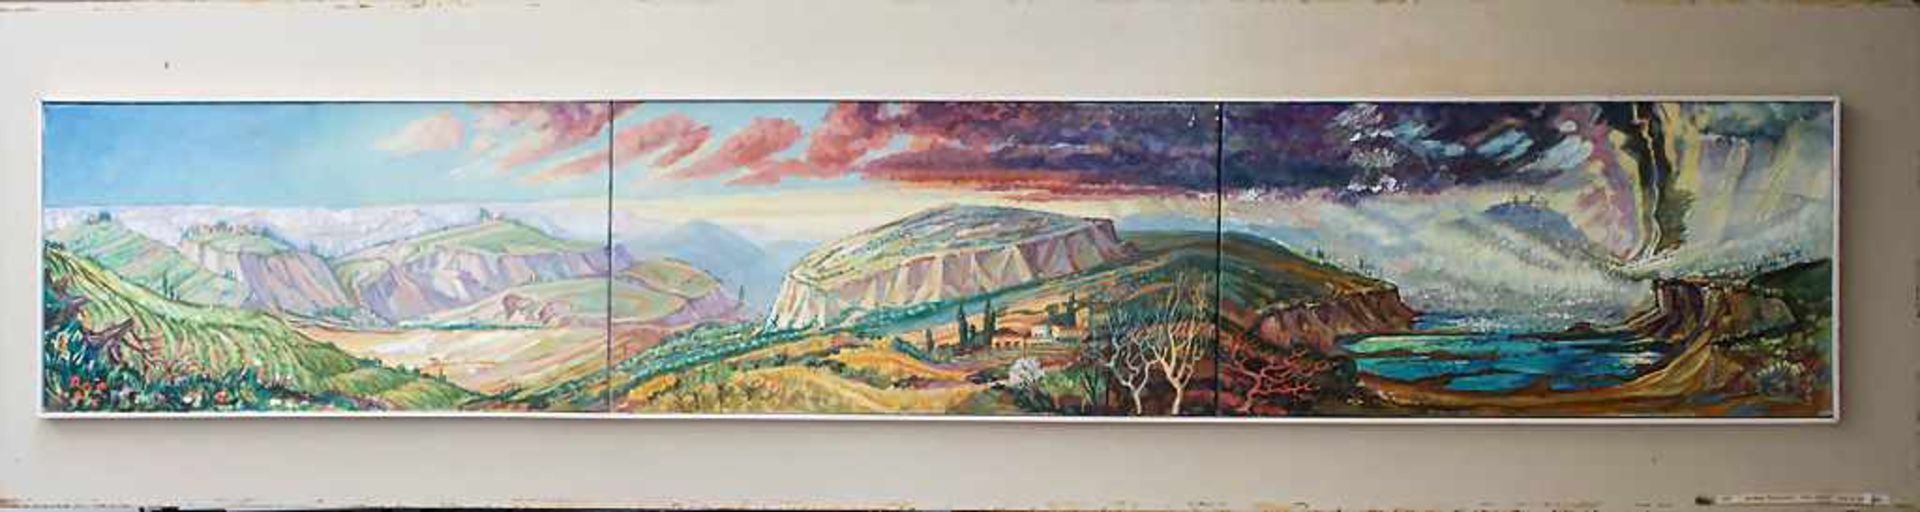 Hardy Schneider-Sato (1919-2002), Triptychon 'Die Crete' / A triptych 'The Crete' - Image 2 of 8